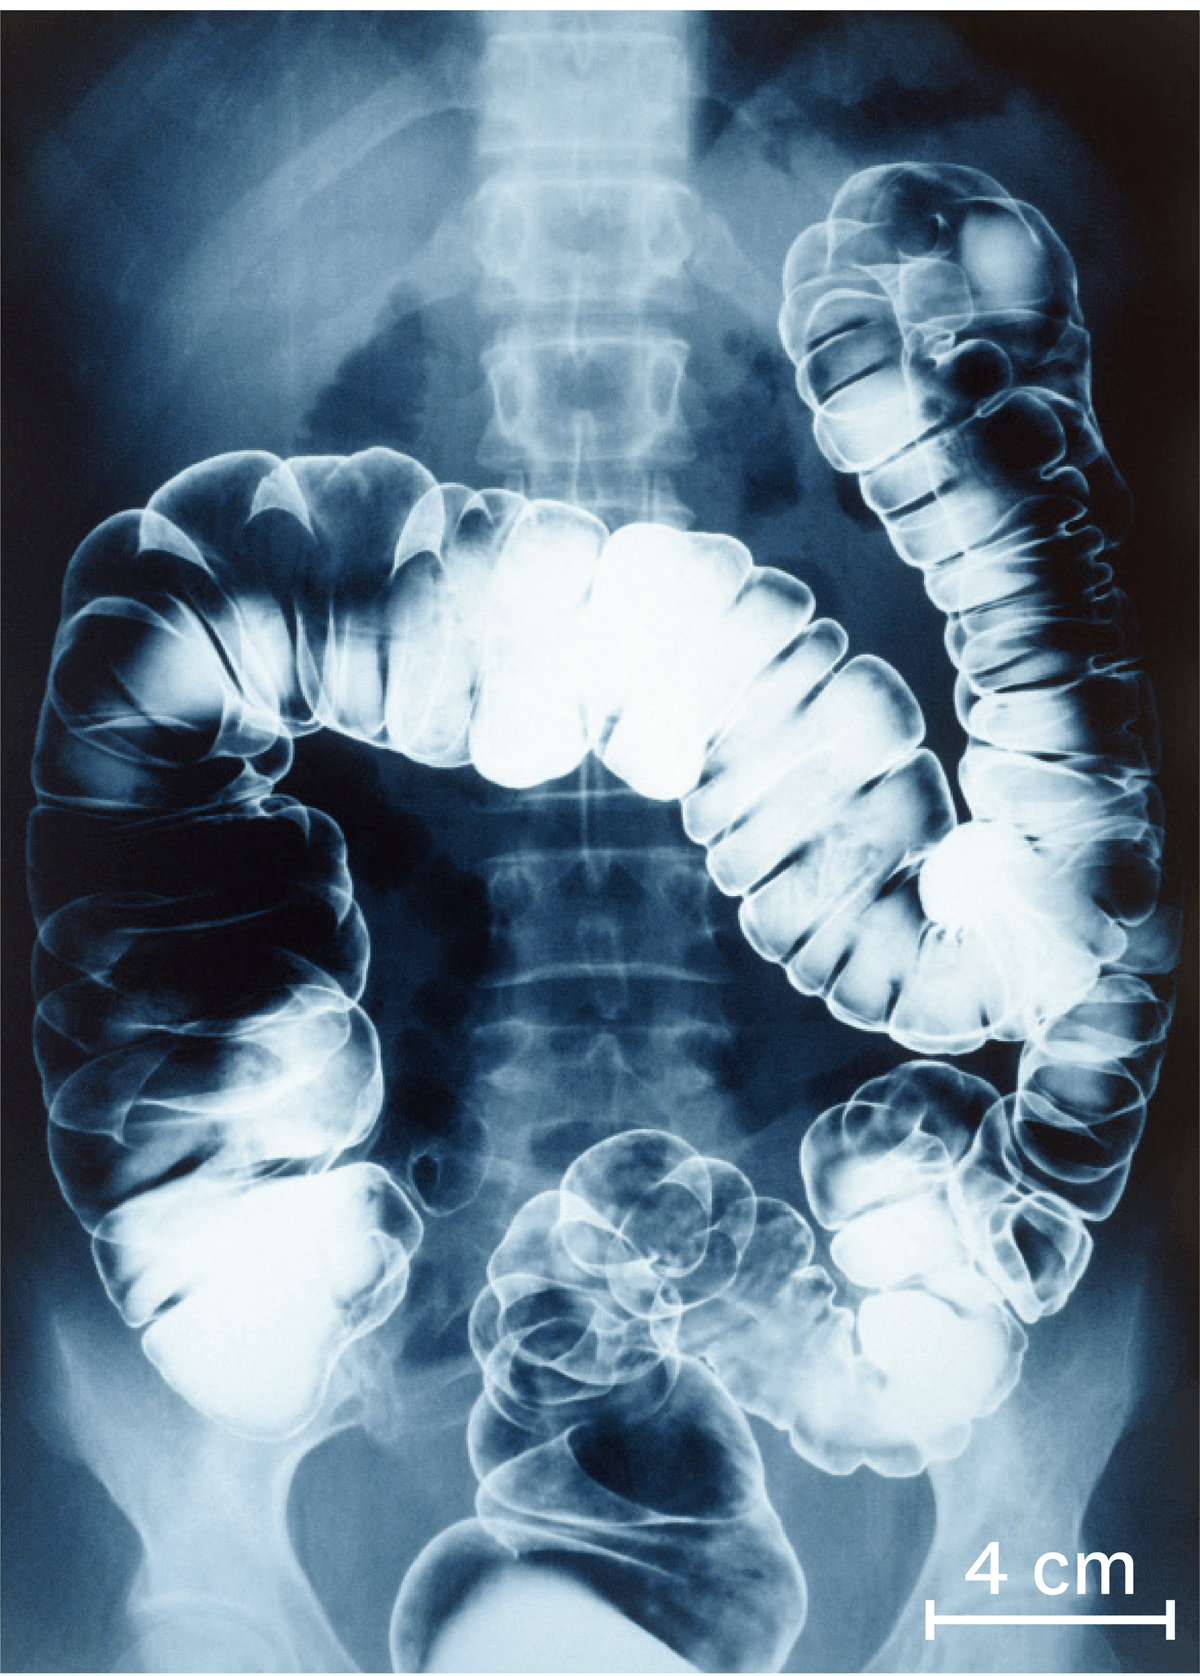 Une radiographie du gros intestin chez un être humain 10 à 15 heures après ingestion du produit.